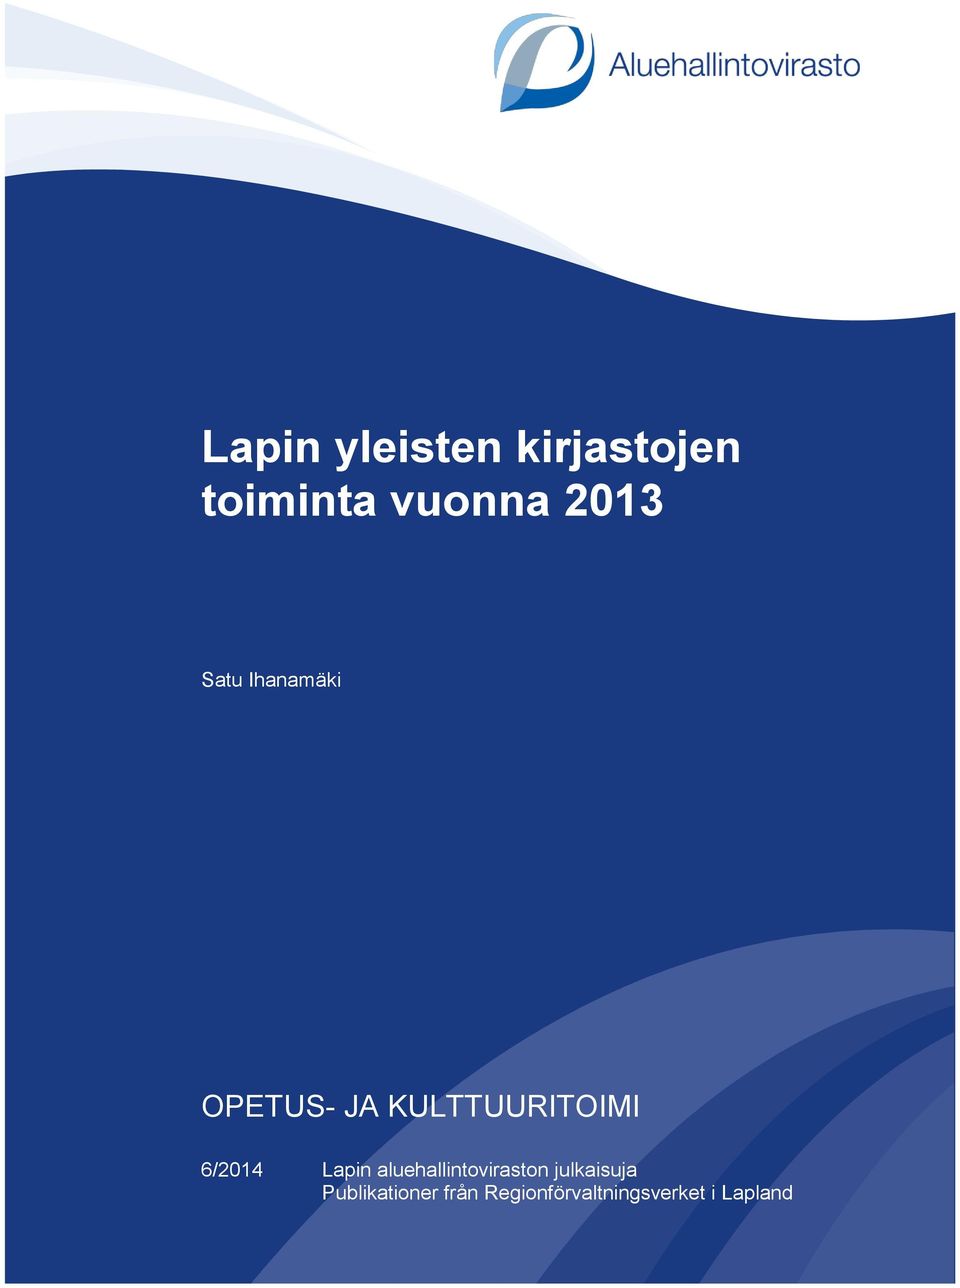 6/2014 Lapin aluehallintoviraston julkaisuja